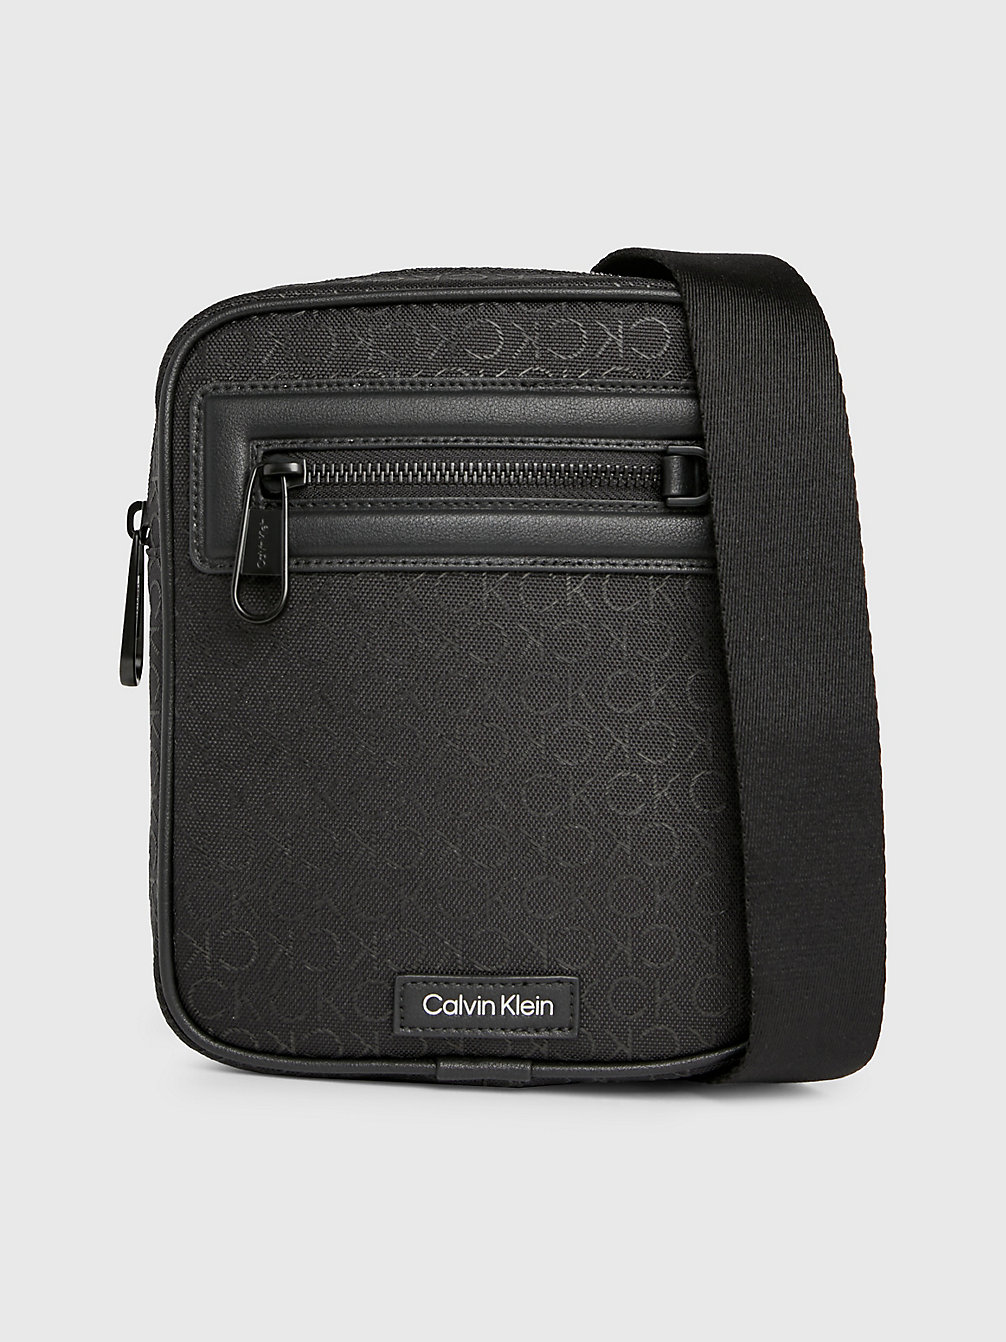 JACQUARD MONO BLACK Small Convertible Logo Reporter Bag undefined Men Calvin Klein